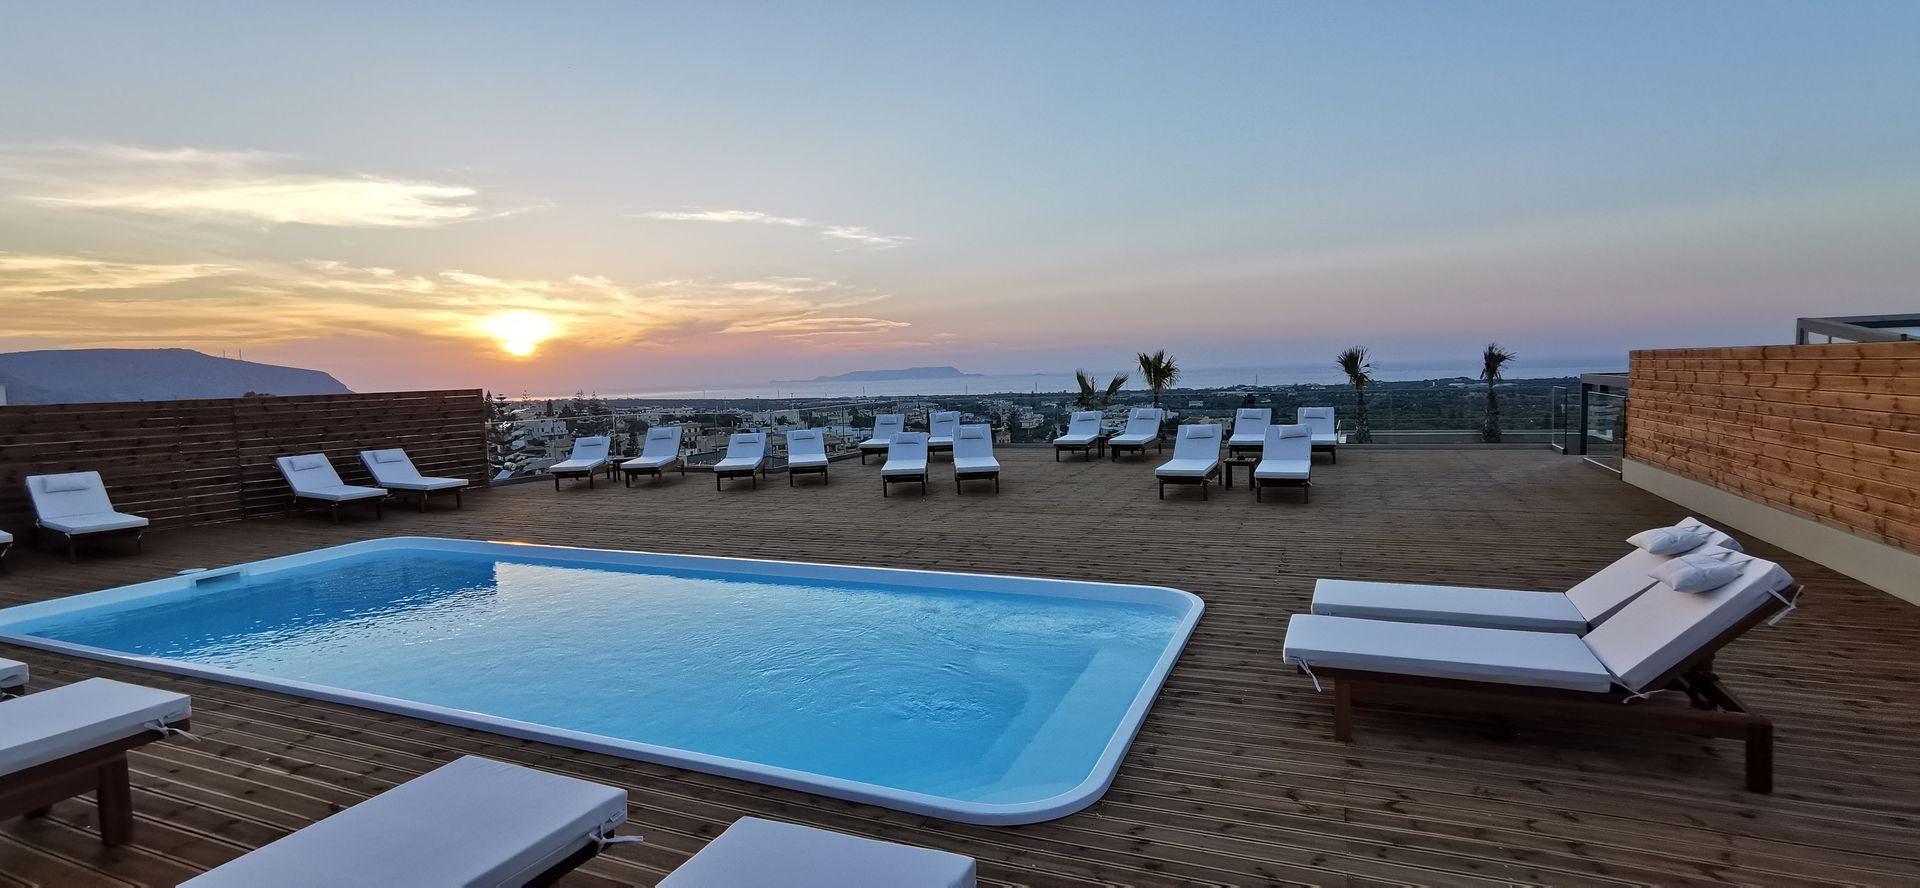 4* Villaggio Hotel - Χερσόνησος, Κρήτη ✦ 2 Ημέρες (1 Διανυκτέρευση) ✦ 2 άτομα ✦ Πρωινό ✦ 10/04/2022 έως 30/09/2022 ✦ Yπέροχη θέα στον κόλπο της Χερσονήσου!